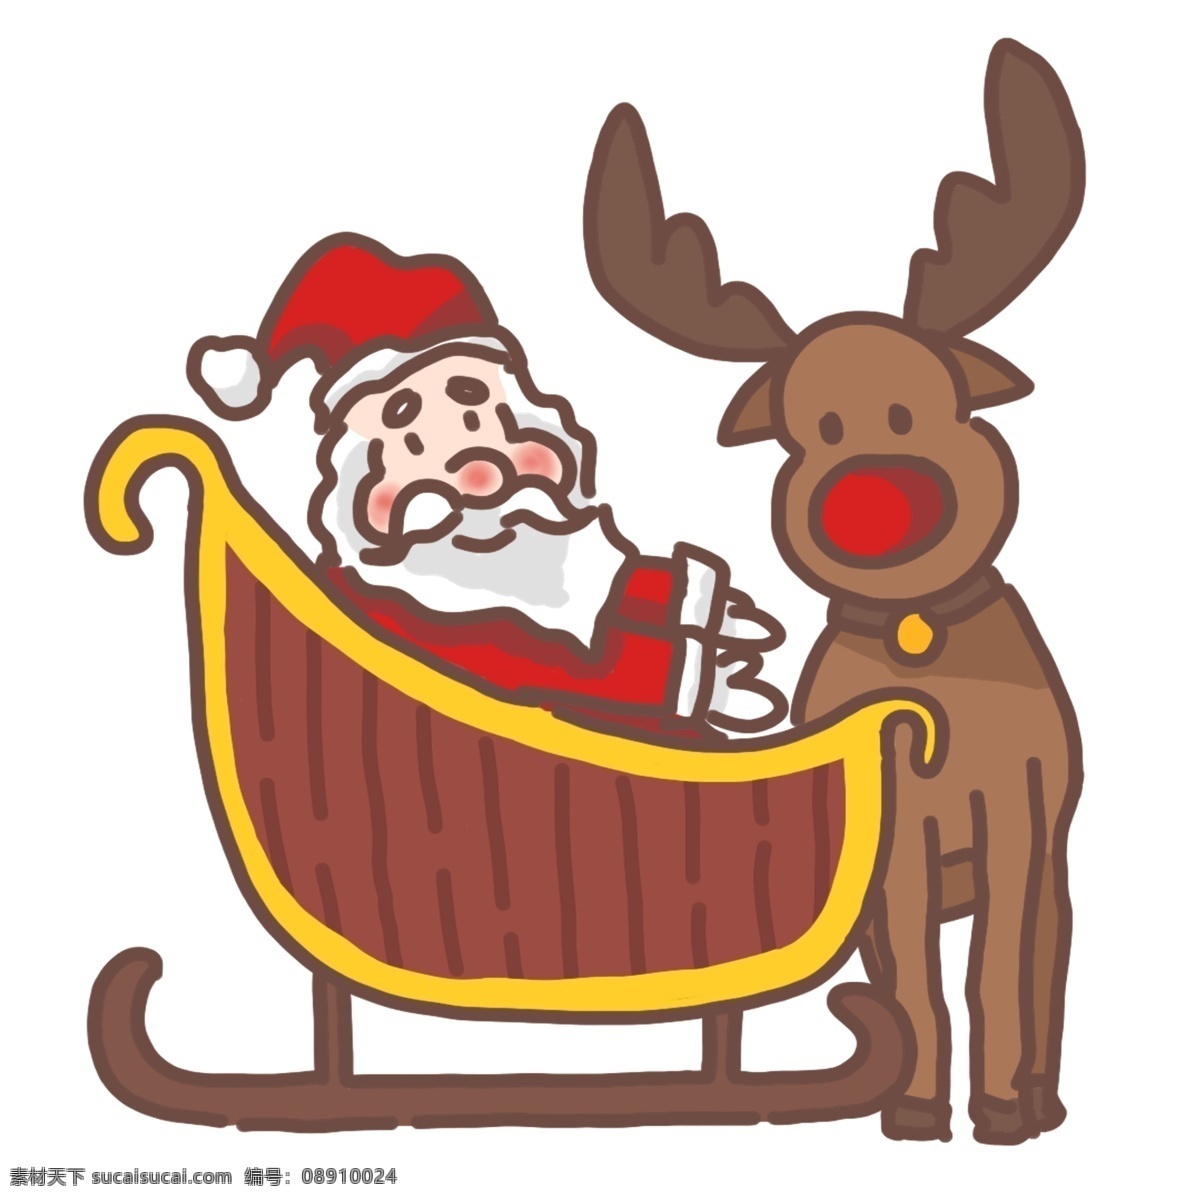 坐在 雪橇 车上 圣诞老人 圣诞节 系列 五 卡通 手绘 雪橇车 麋鹿 铃铛 咖啡色 大红色 黄色 装饰贴画